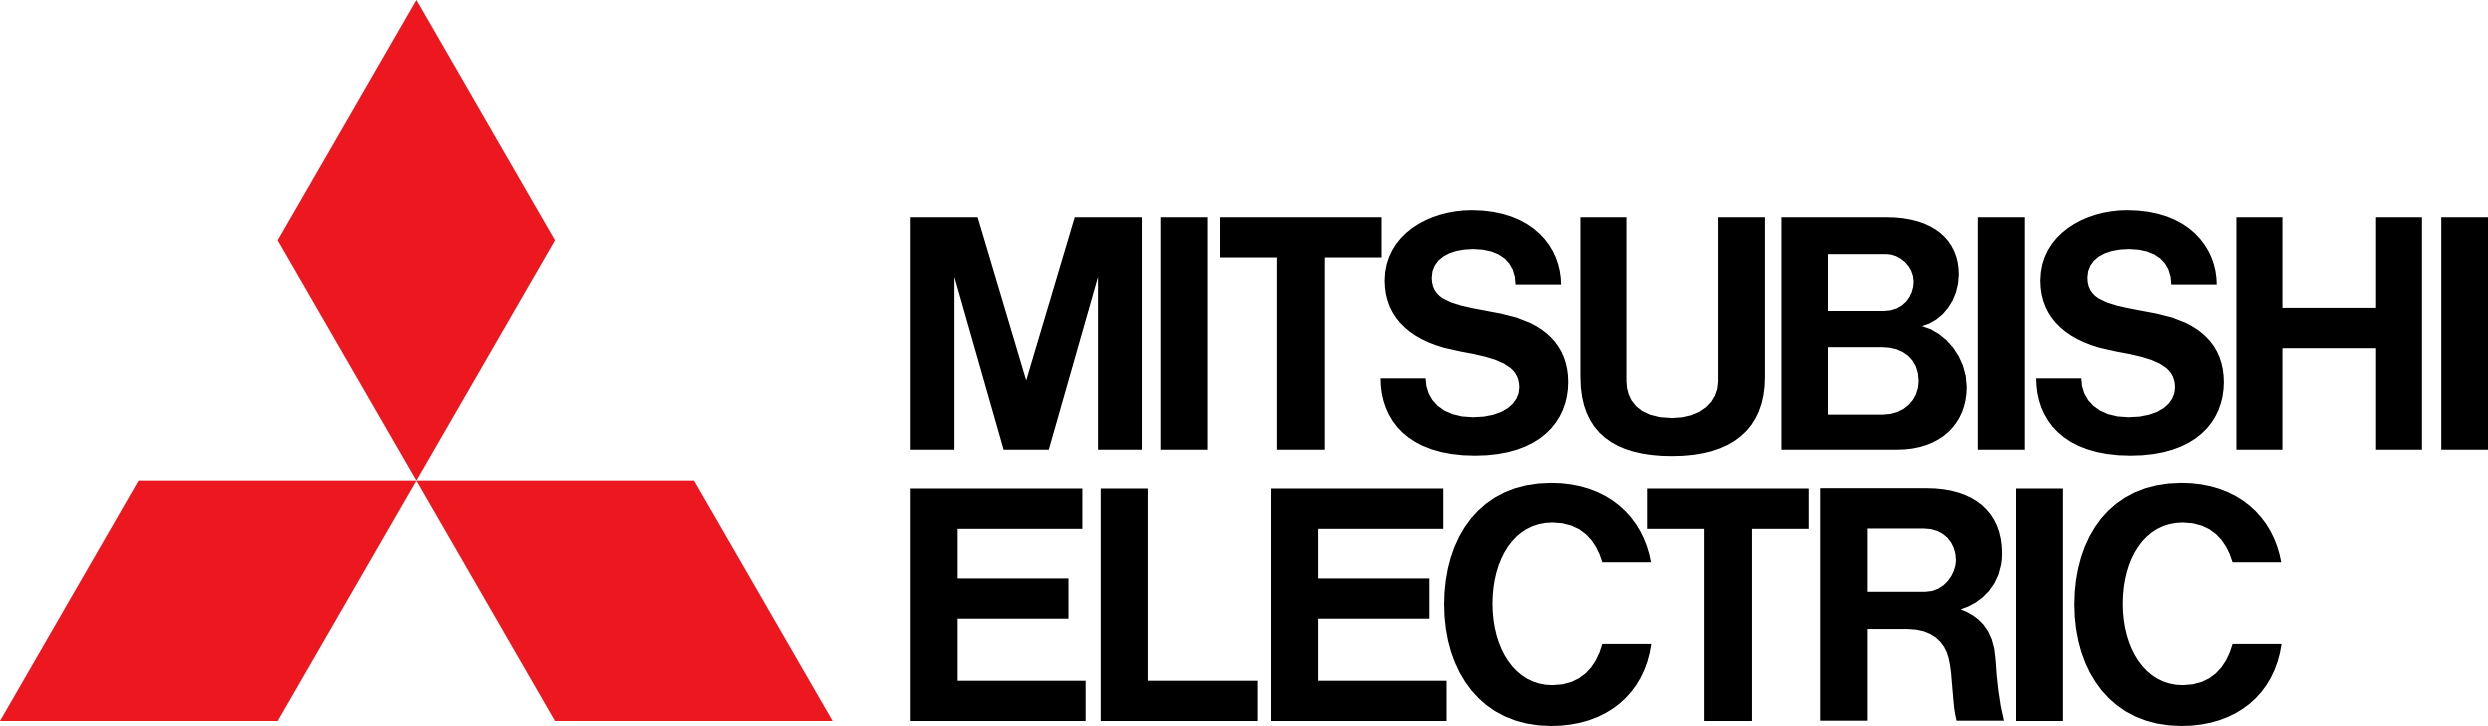 Logo_De_Mitsubishi_Small